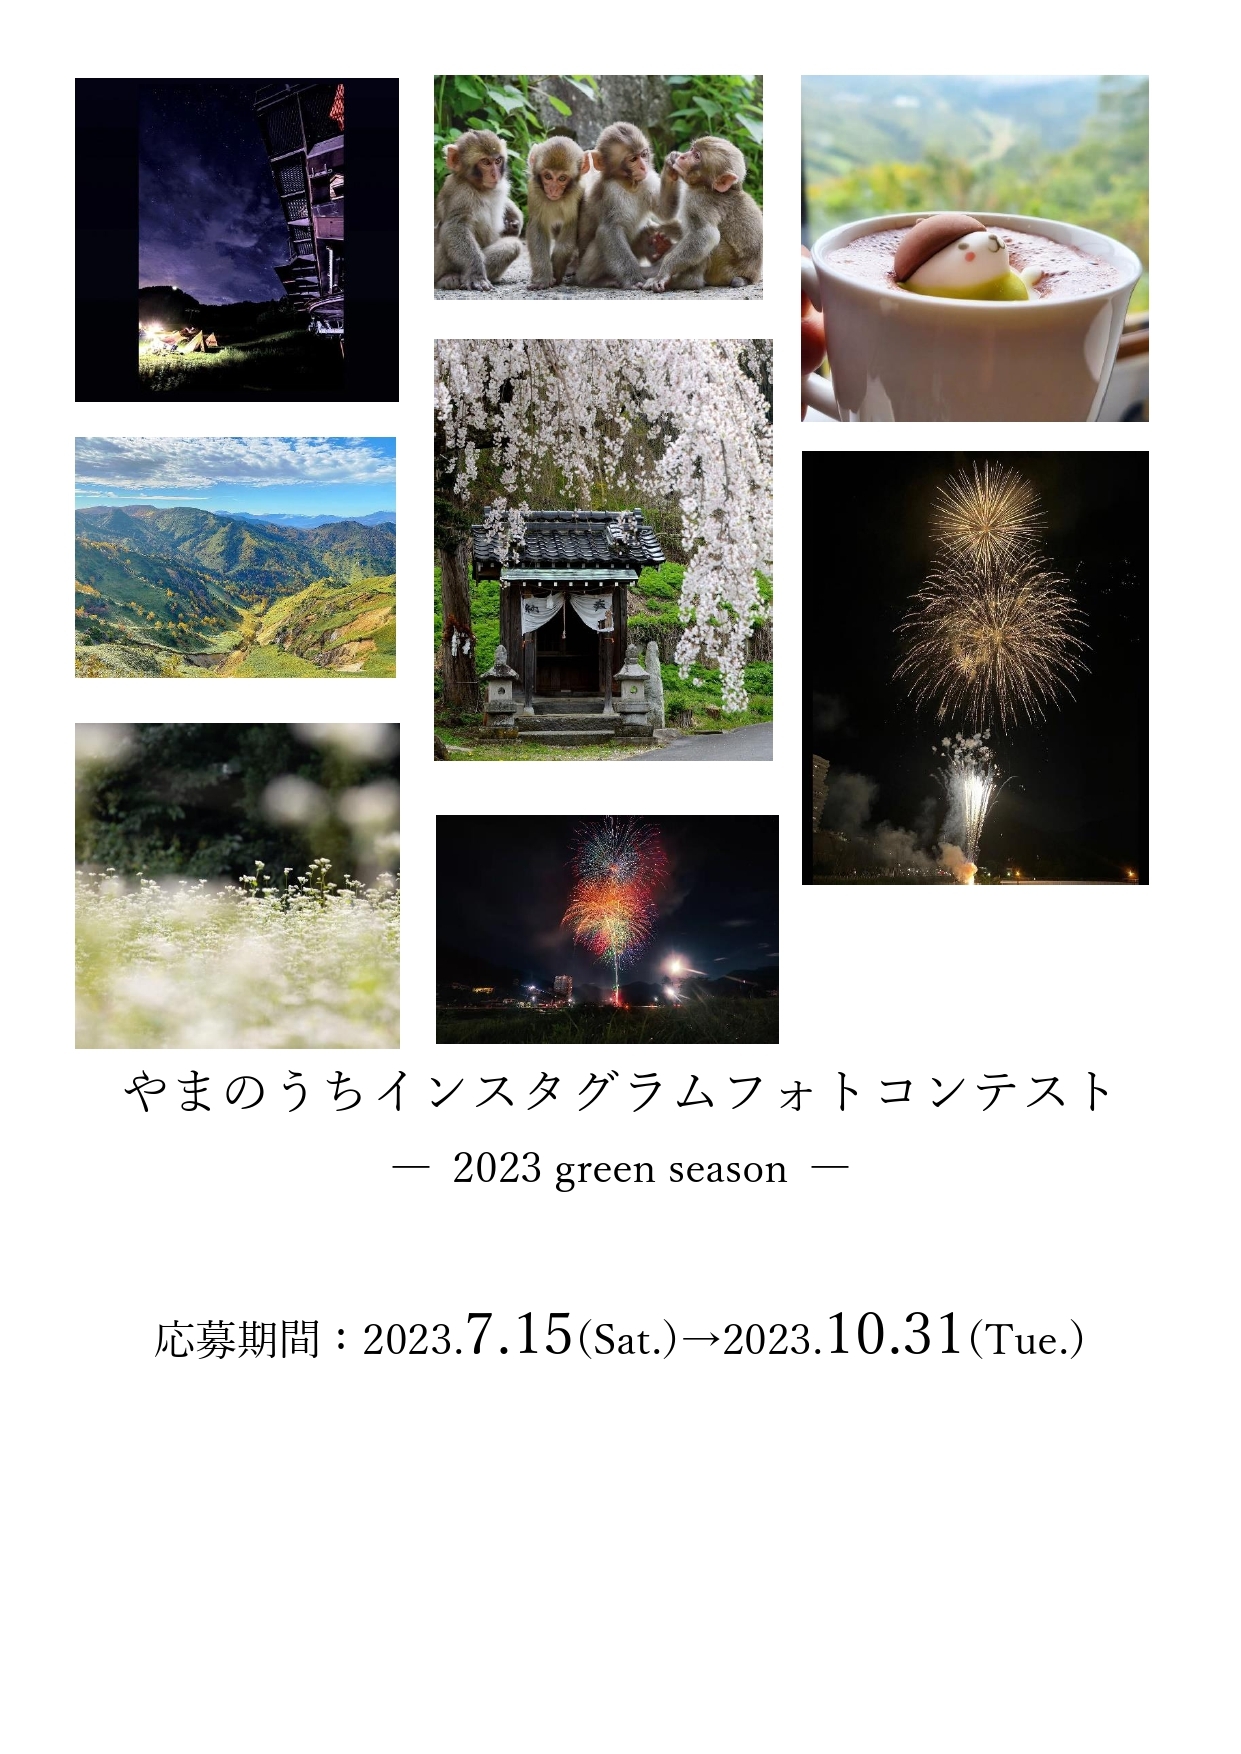 山ノ内町インスタグラムフォトコンテスト -2022 green season-